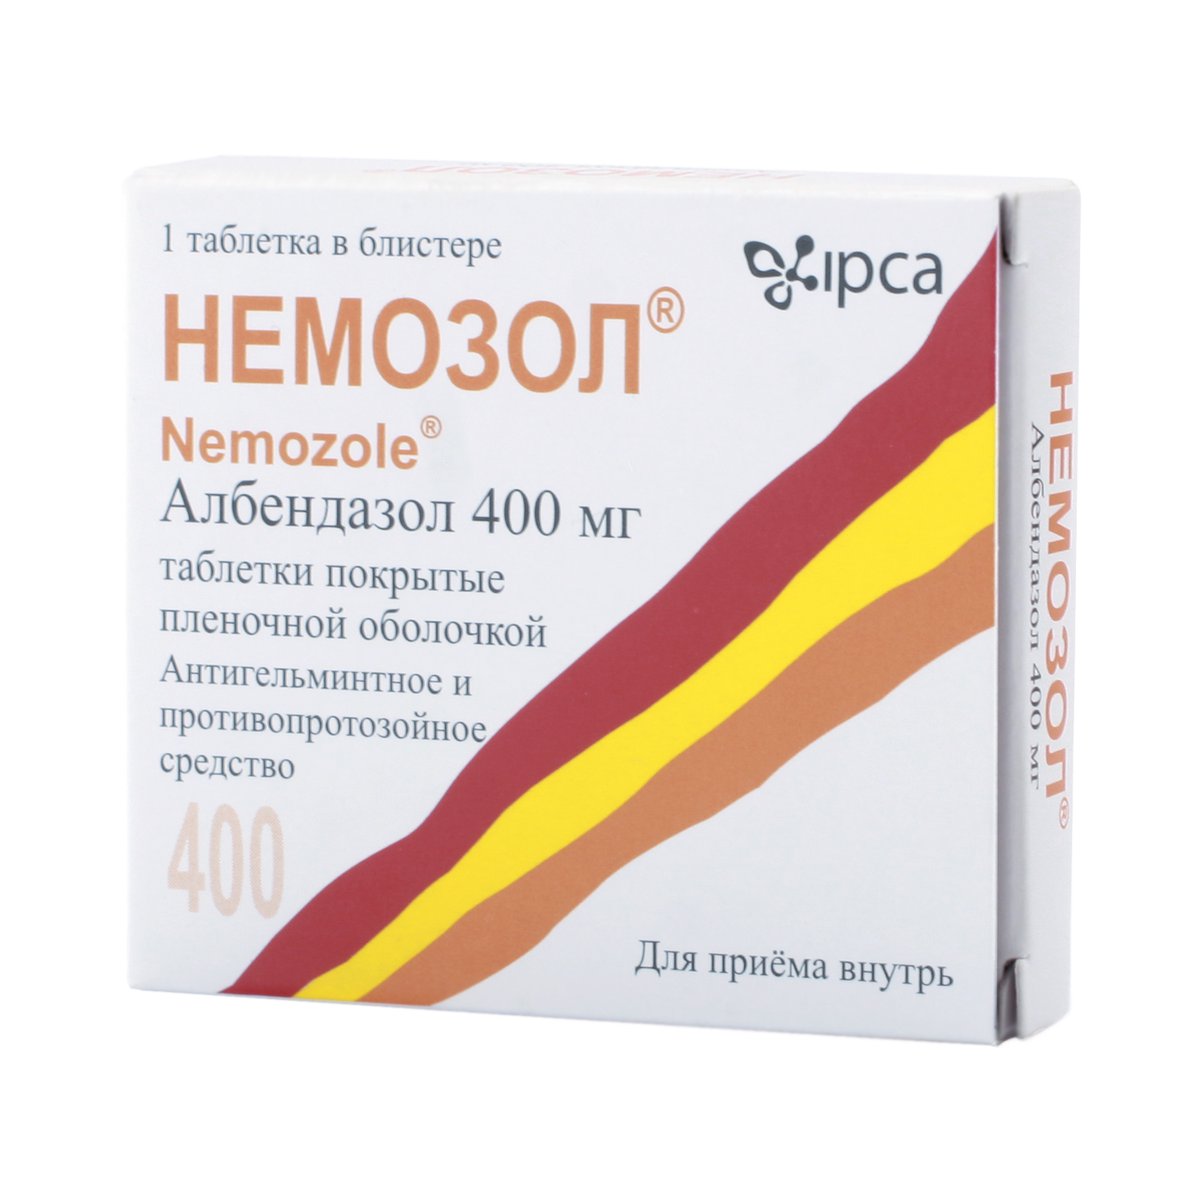 Немозол (таблетки, 1 шт, 400 мг) - цена,  онлайн  .